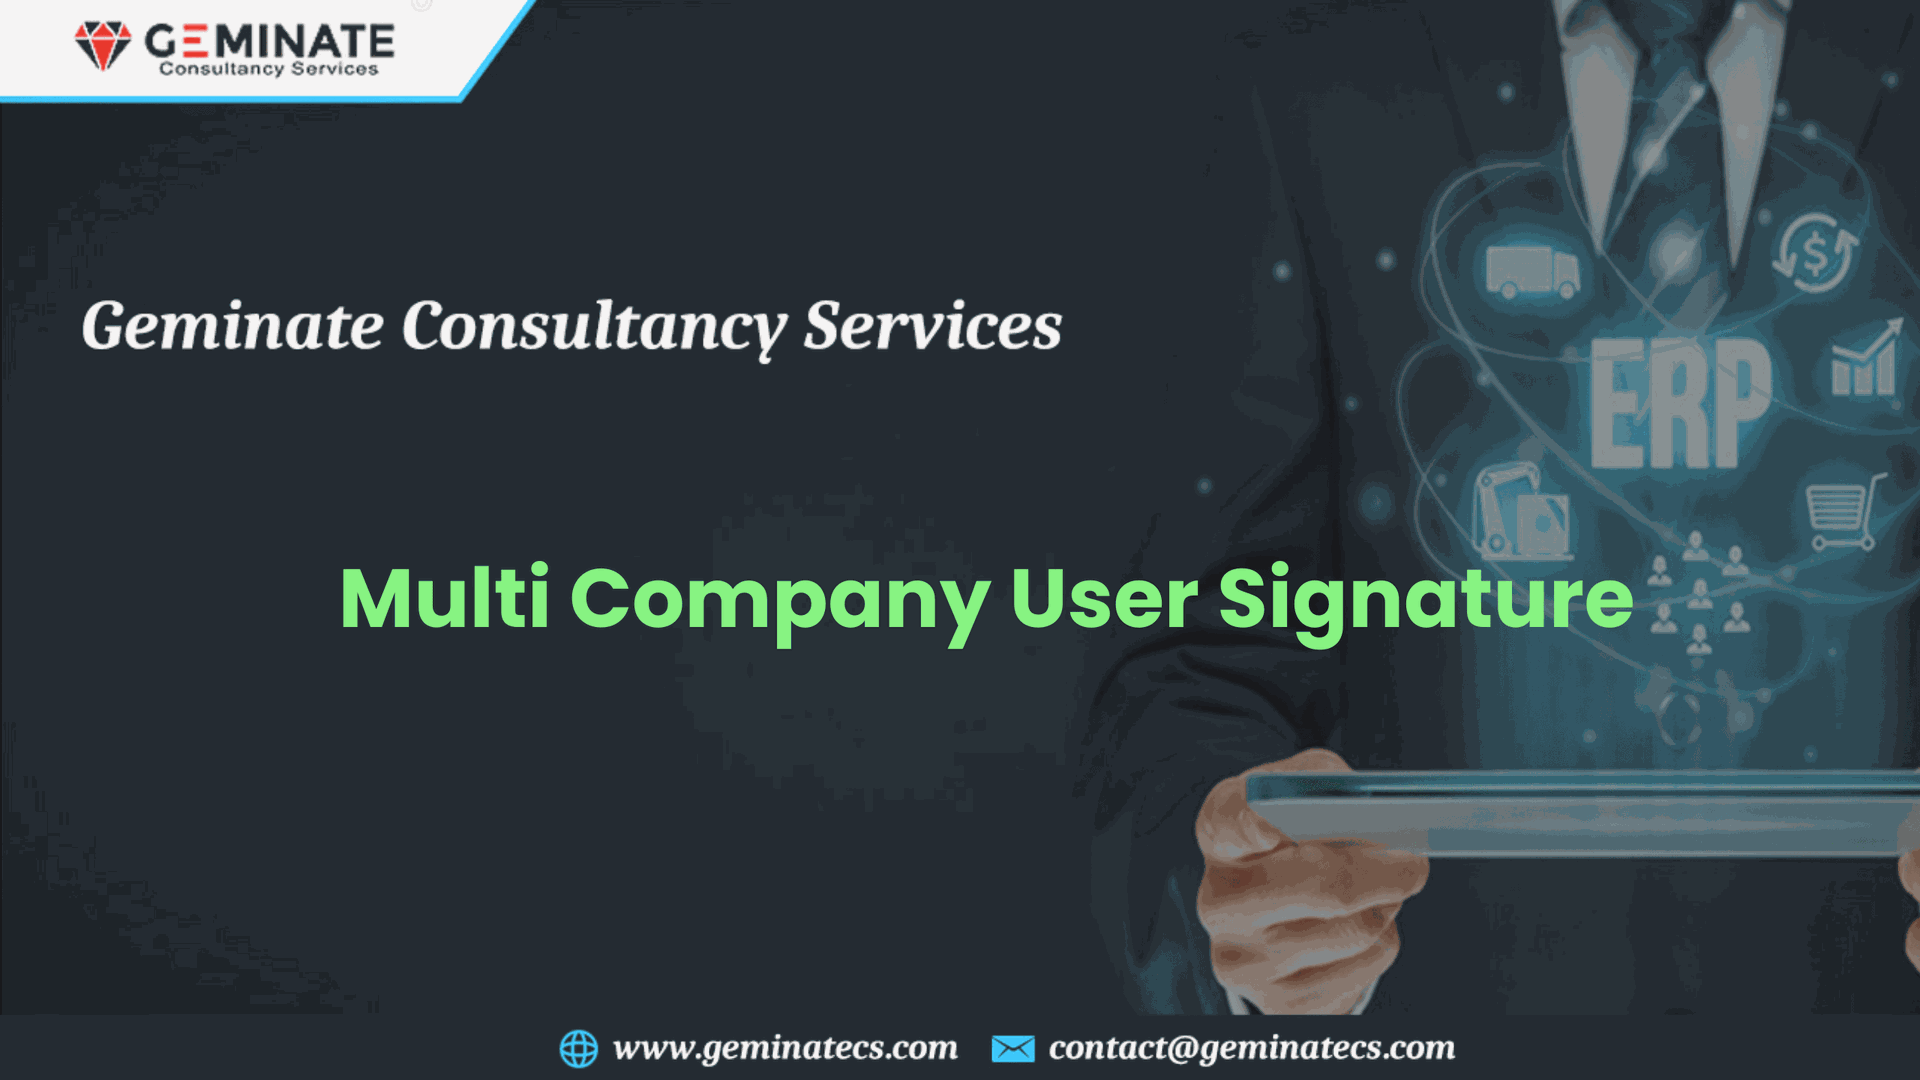 Multi Company User Signature